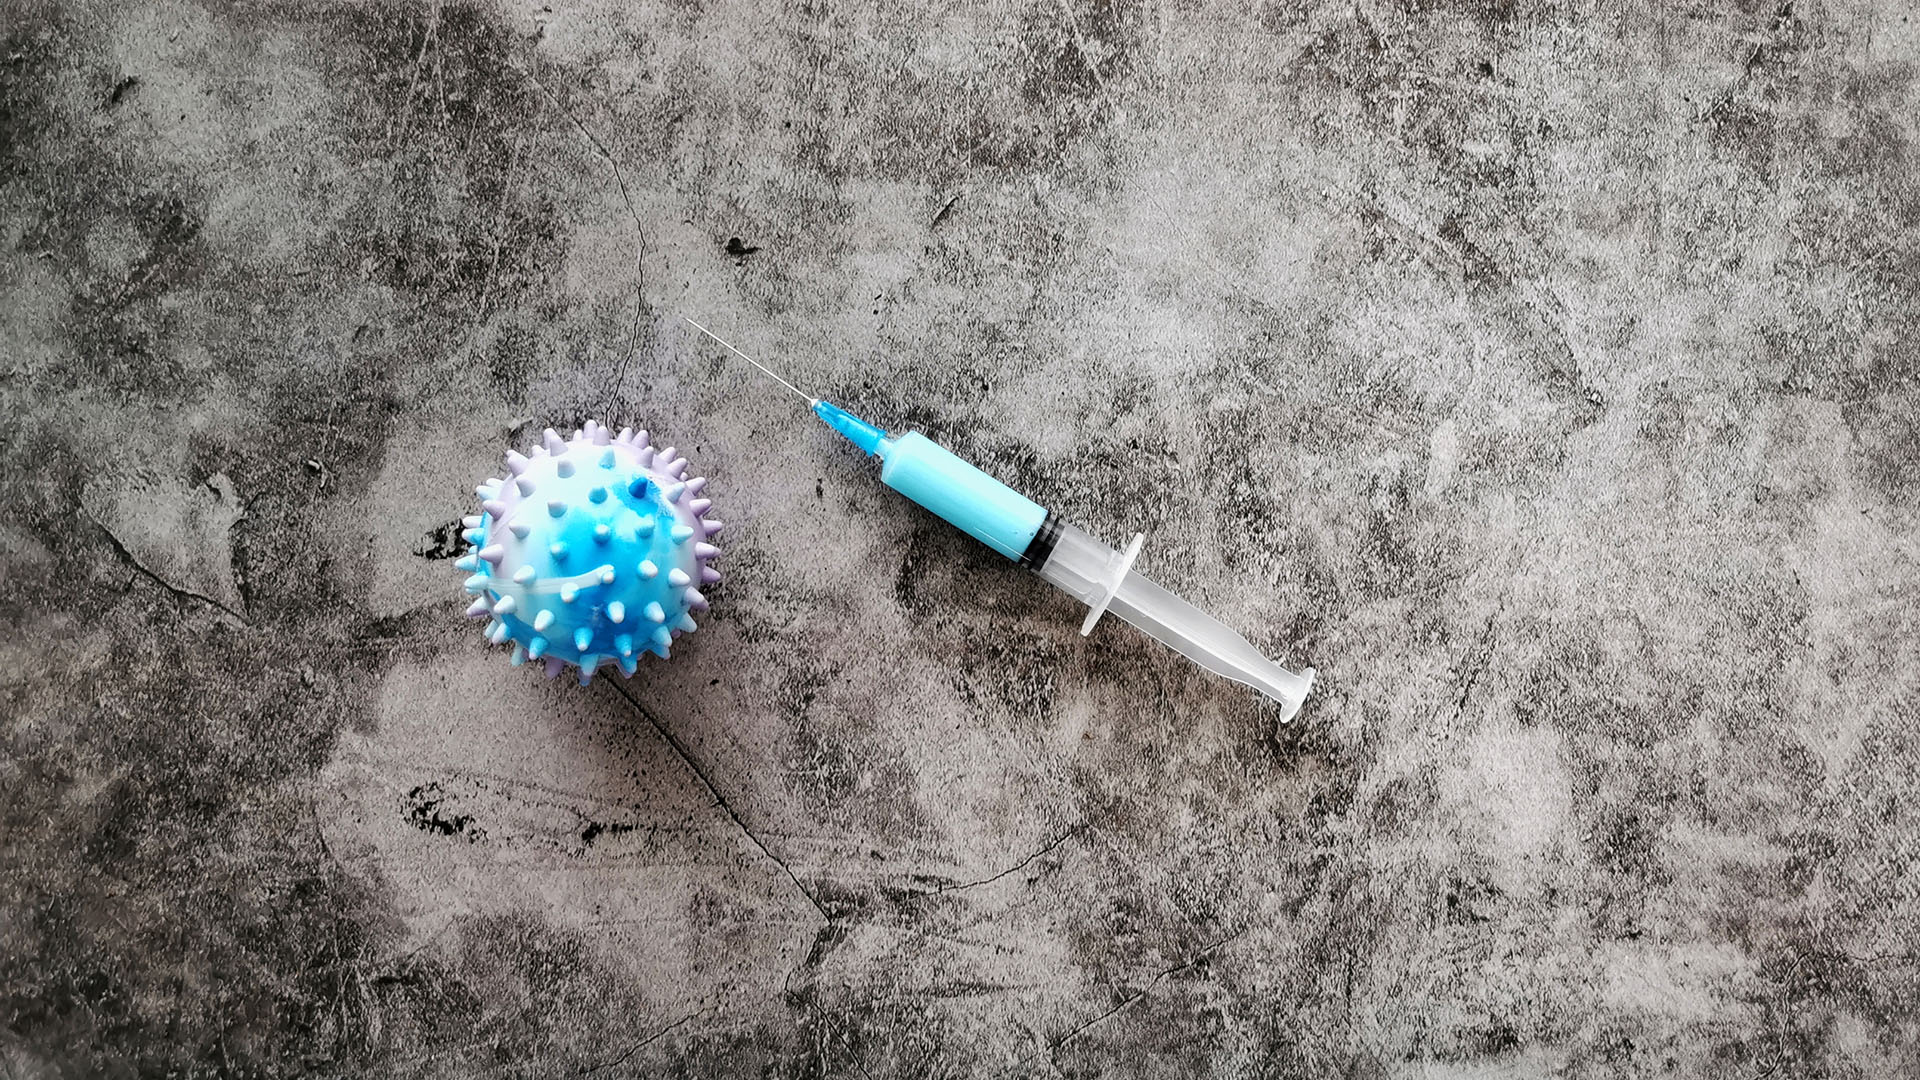 Actualmente, se están llevando a cabo numerosas investigaciones nacionales e internacionales para descubrir una vacuna contra el COVID-19 (Shutterstock)